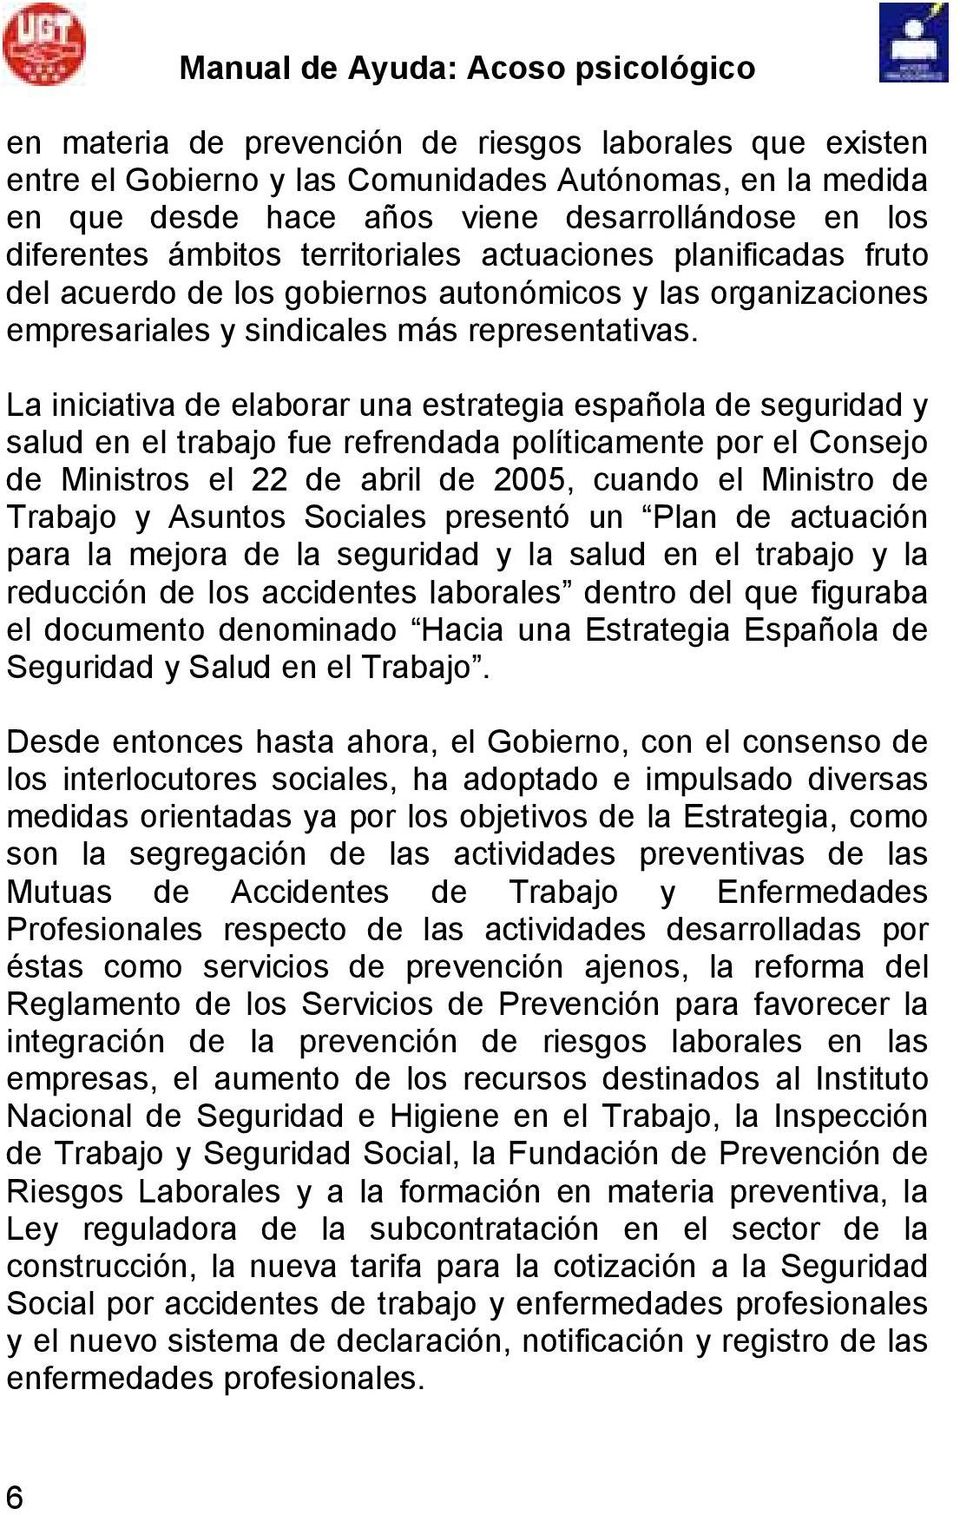 La iniciativa de elaborar una estrategia española de seguridad y salud en el trabajo fue refrendada políticamente por el Consejo de Ministros el 22 de abril de 2005, cuando el Ministro de Trabajo y